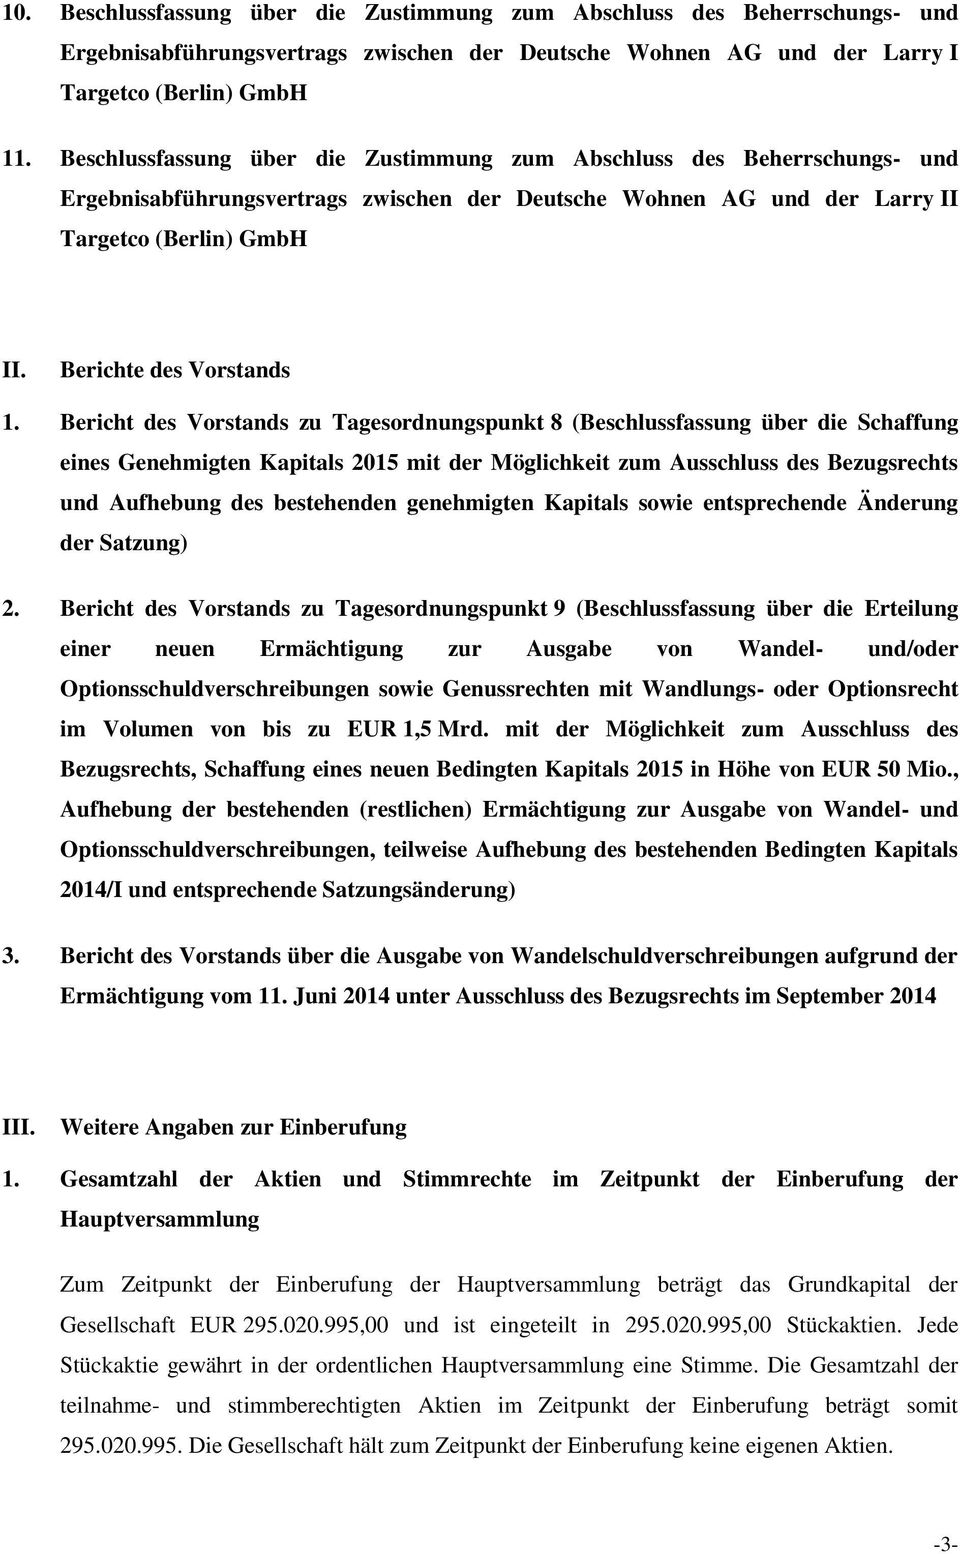 Bericht des Vorstands zu Tagesordnungspunkt 8 (Beschlussfassung über die Schaffung eines Genehmigten Kapitals 2015 mit der Möglichkeit zum Ausschluss des Bezugsrechts und Aufhebung des bestehenden